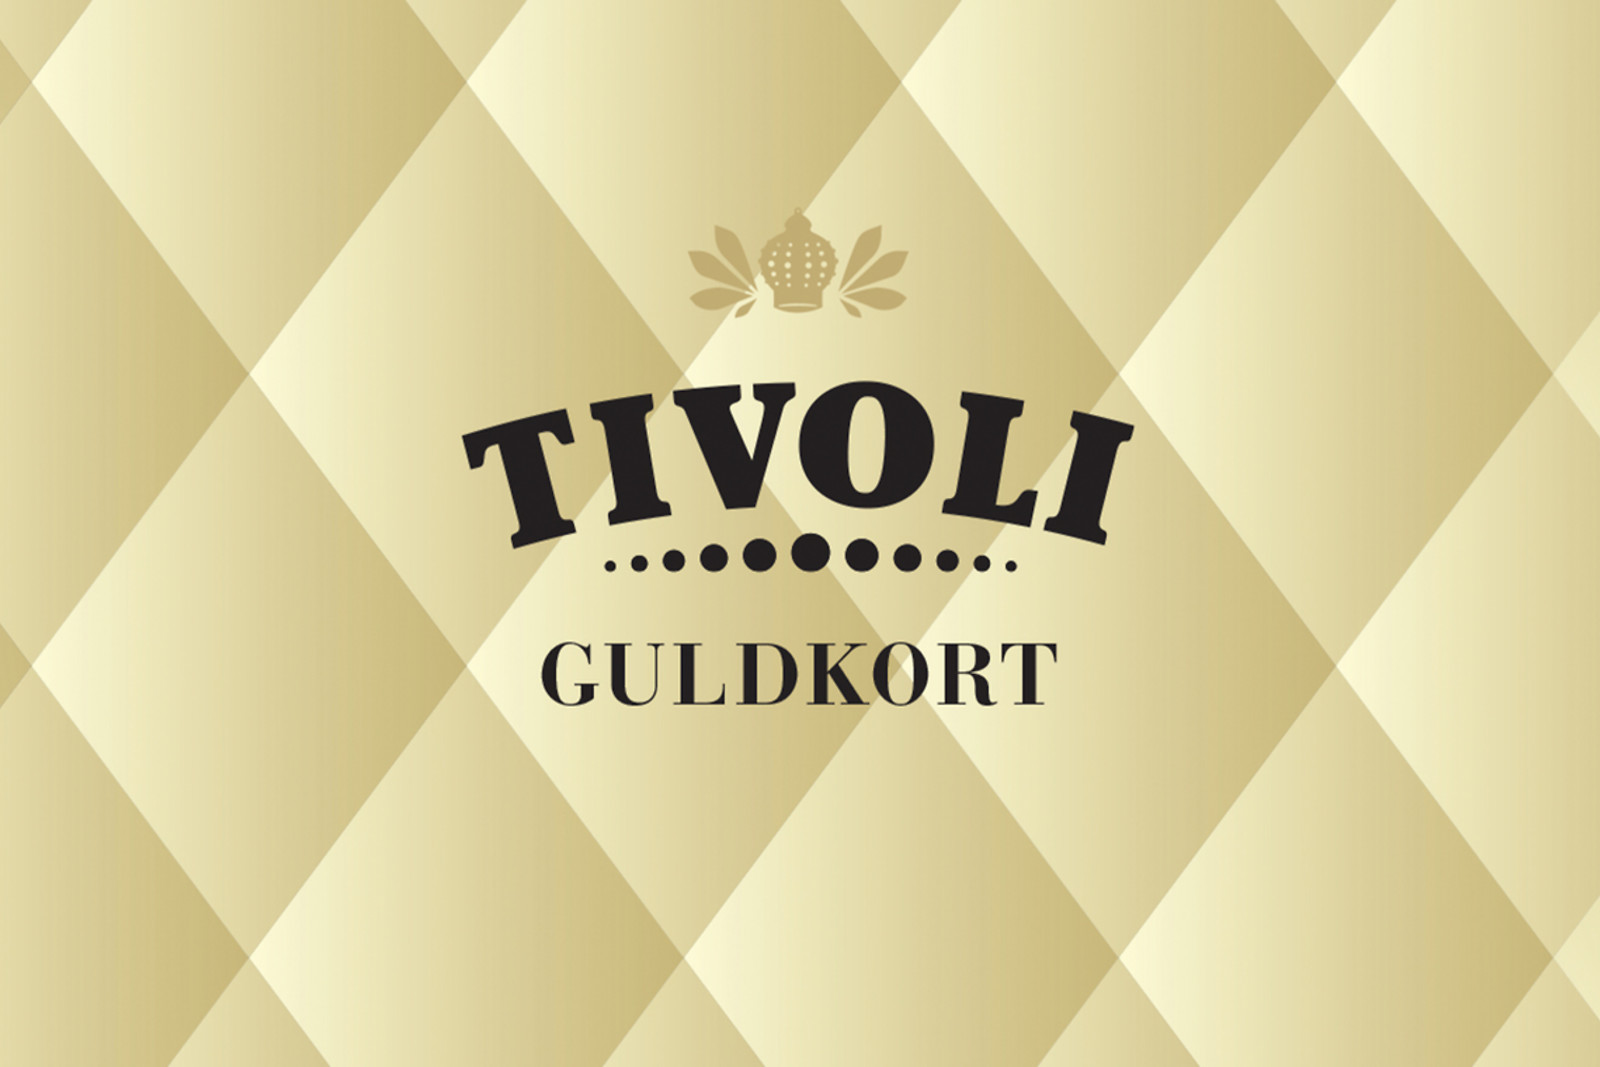 Se Tivoli Guldkort - Kultur og Fritid - GO DREAM hos GO DREAM DK